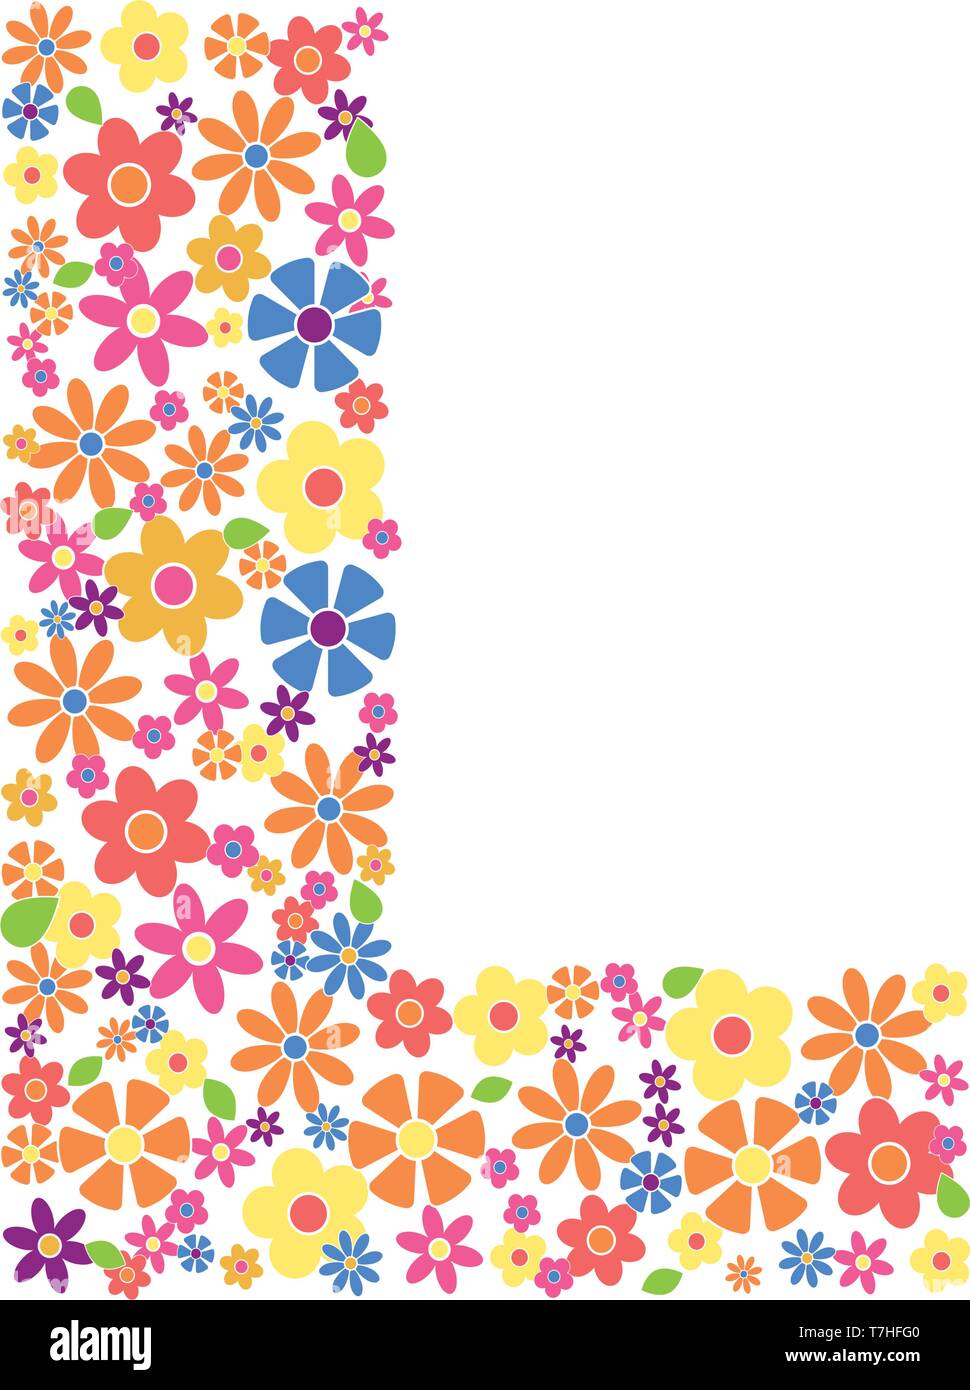 Buchstabe L gefüllt mit einer Vielzahl von bunten Blumen auf weißem Hintergrund Vektor-illustration isoliert Stock Vektor